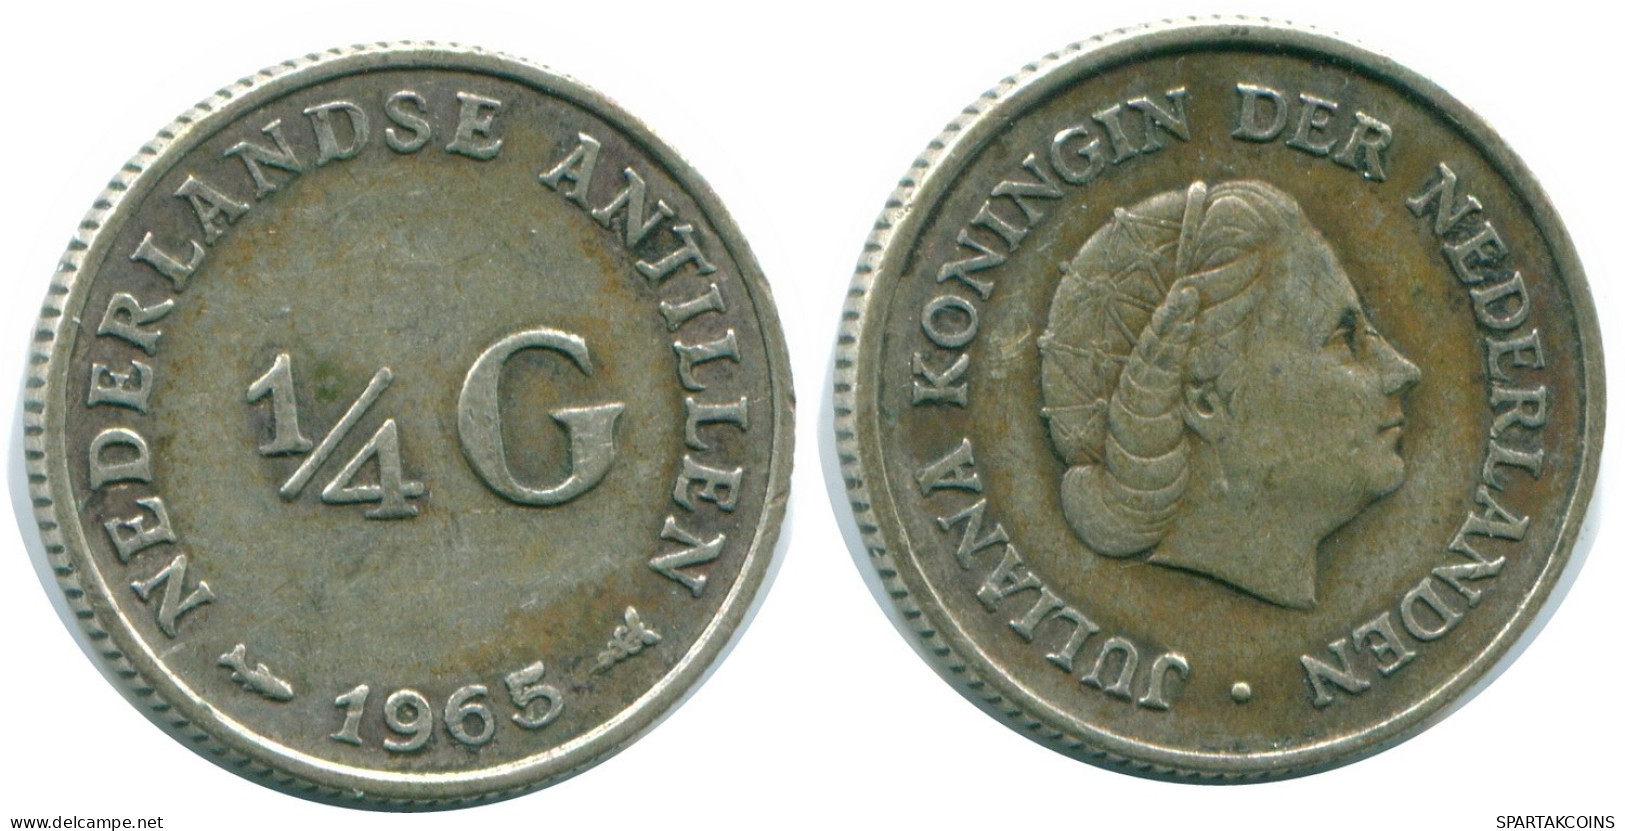 1/4 GULDEN 1965 NIEDERLÄNDISCHE ANTILLEN SILBER Koloniale Münze #NL11339.4.D.A - Nederlandse Antillen